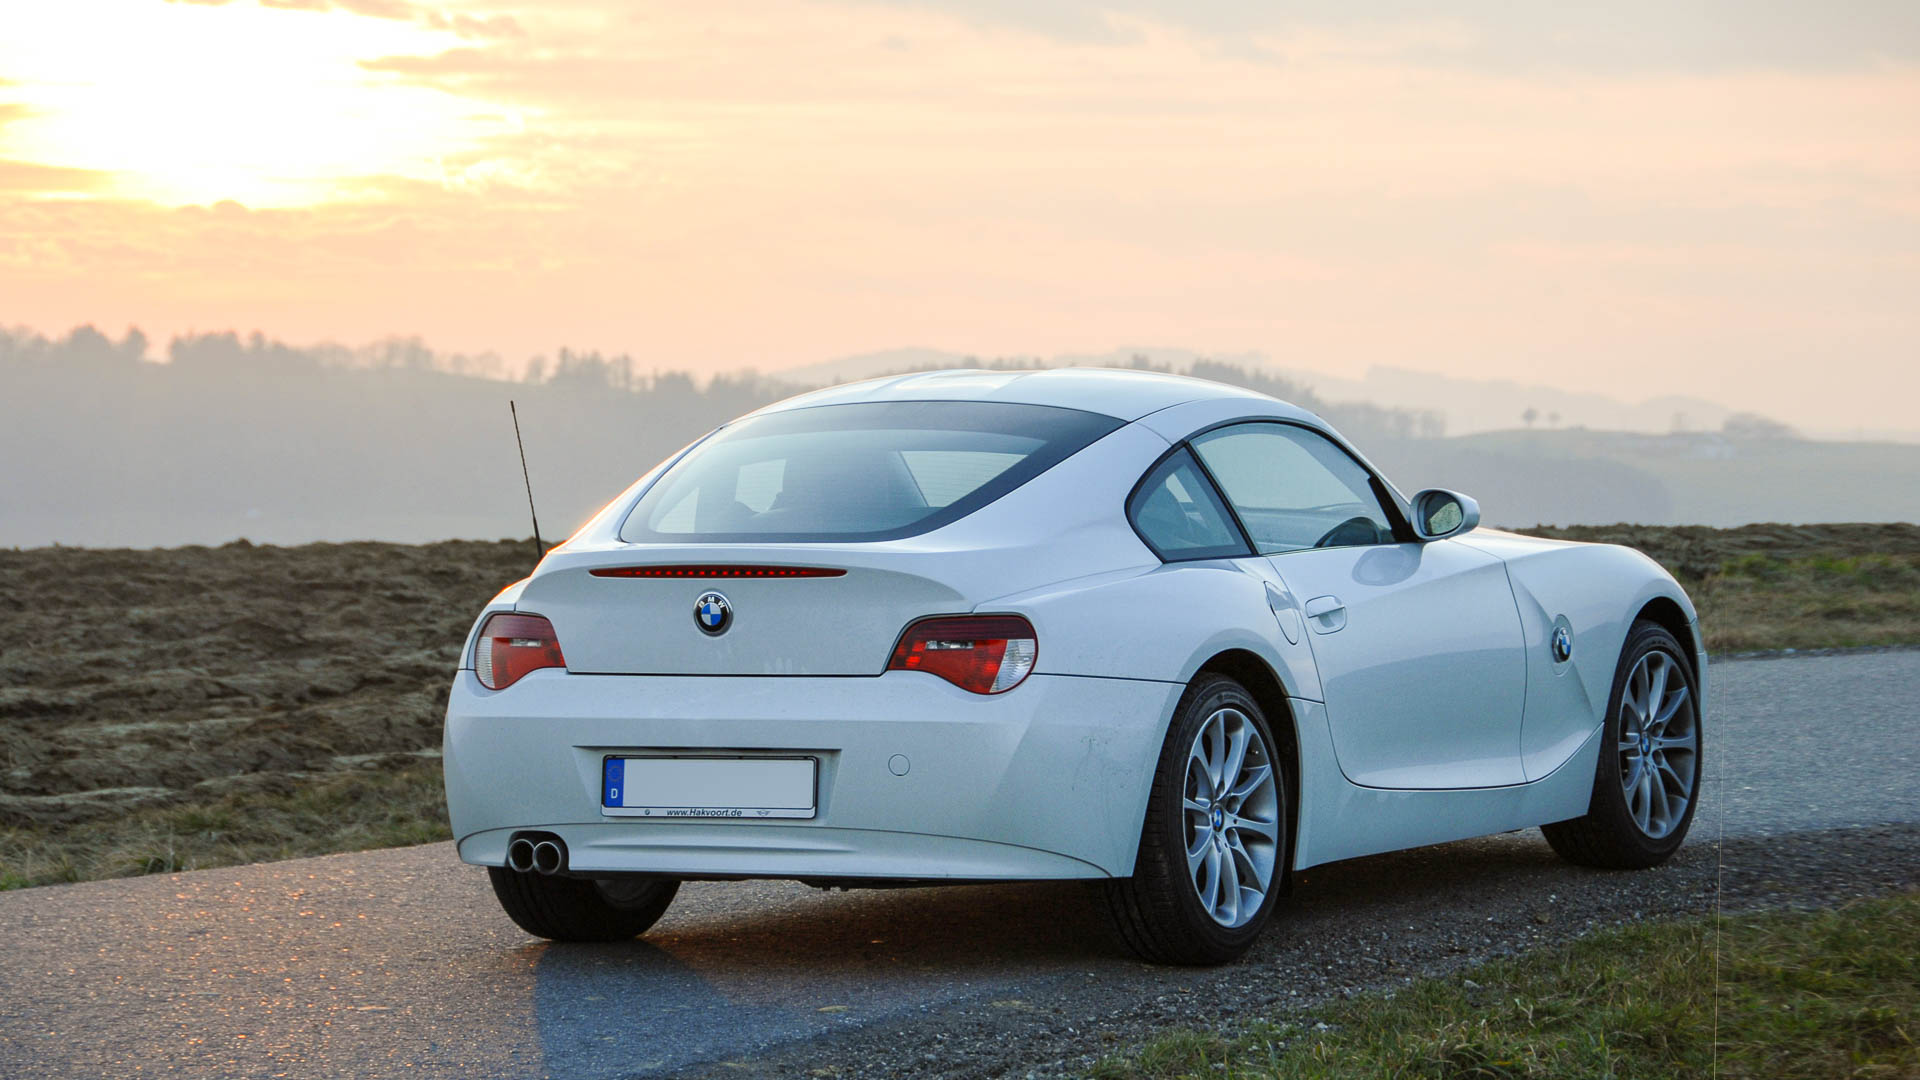 BMW ältere Z3 / Z4 – Schmickler Performance - Tuning und Rennwagenbau